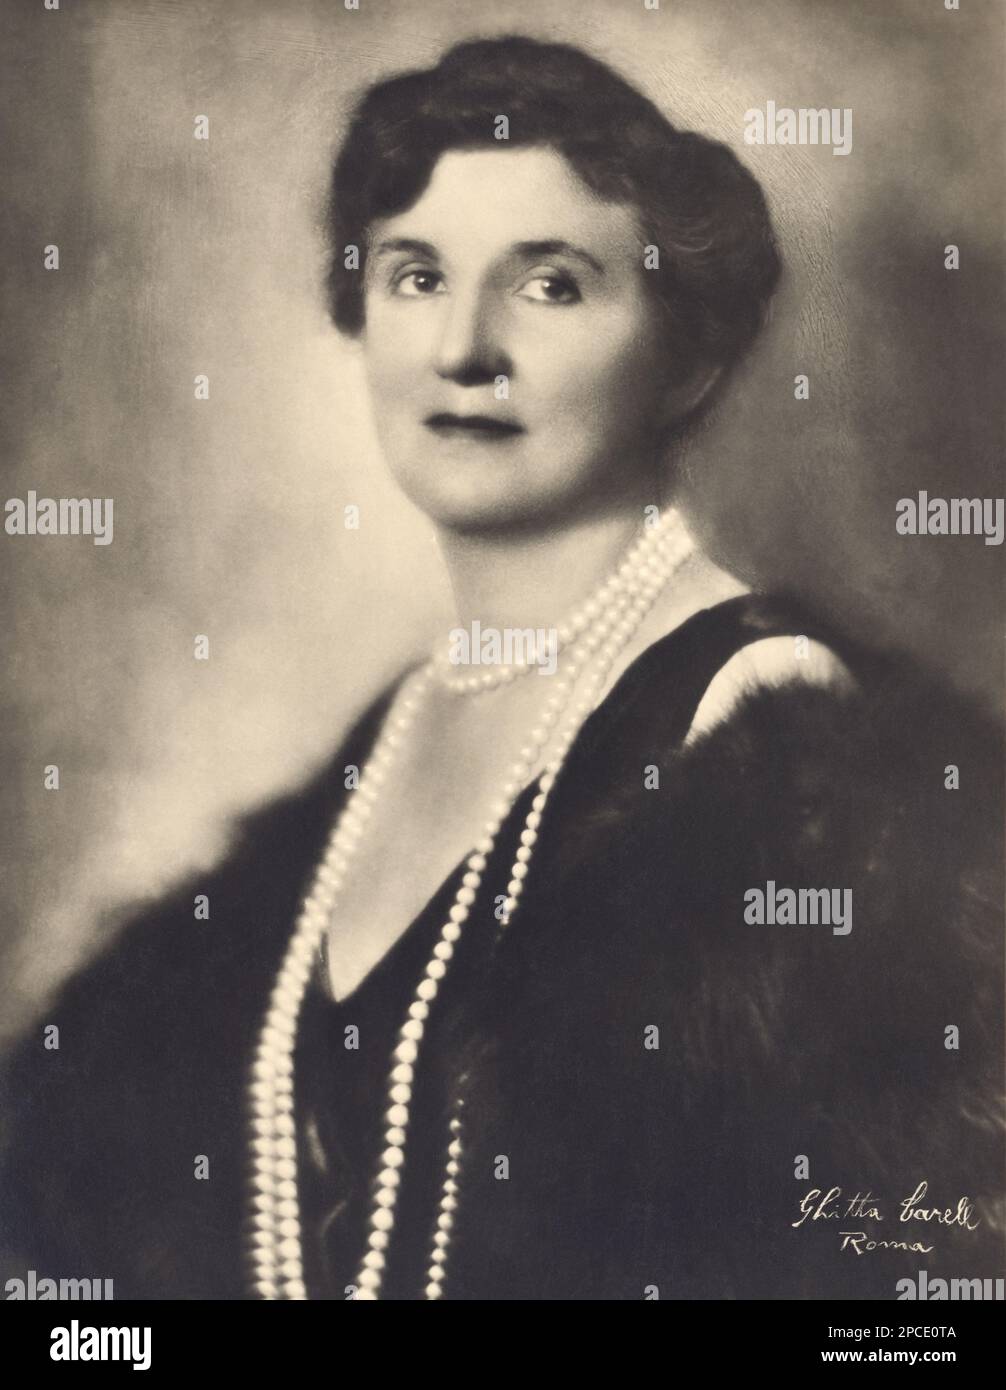 1930 ca. , ITALIA : la Regina d'Italia ELENA ( Helene del Montenegro , 1873 - 1952 ) in ritratto ufficiale di Ghitta Carrell , Roma - CASA SAVOIA - ITALIA - REALI - Nobiltà ITALIANA - NOBILTÀ - ROYALTY - STORIA - FOTO STORICHE - gioiello - gioielli - gioielli - gioielli - collana di perle - collana - decollette - pelliccia - pelliccia --- Archivio GBB Foto Stock